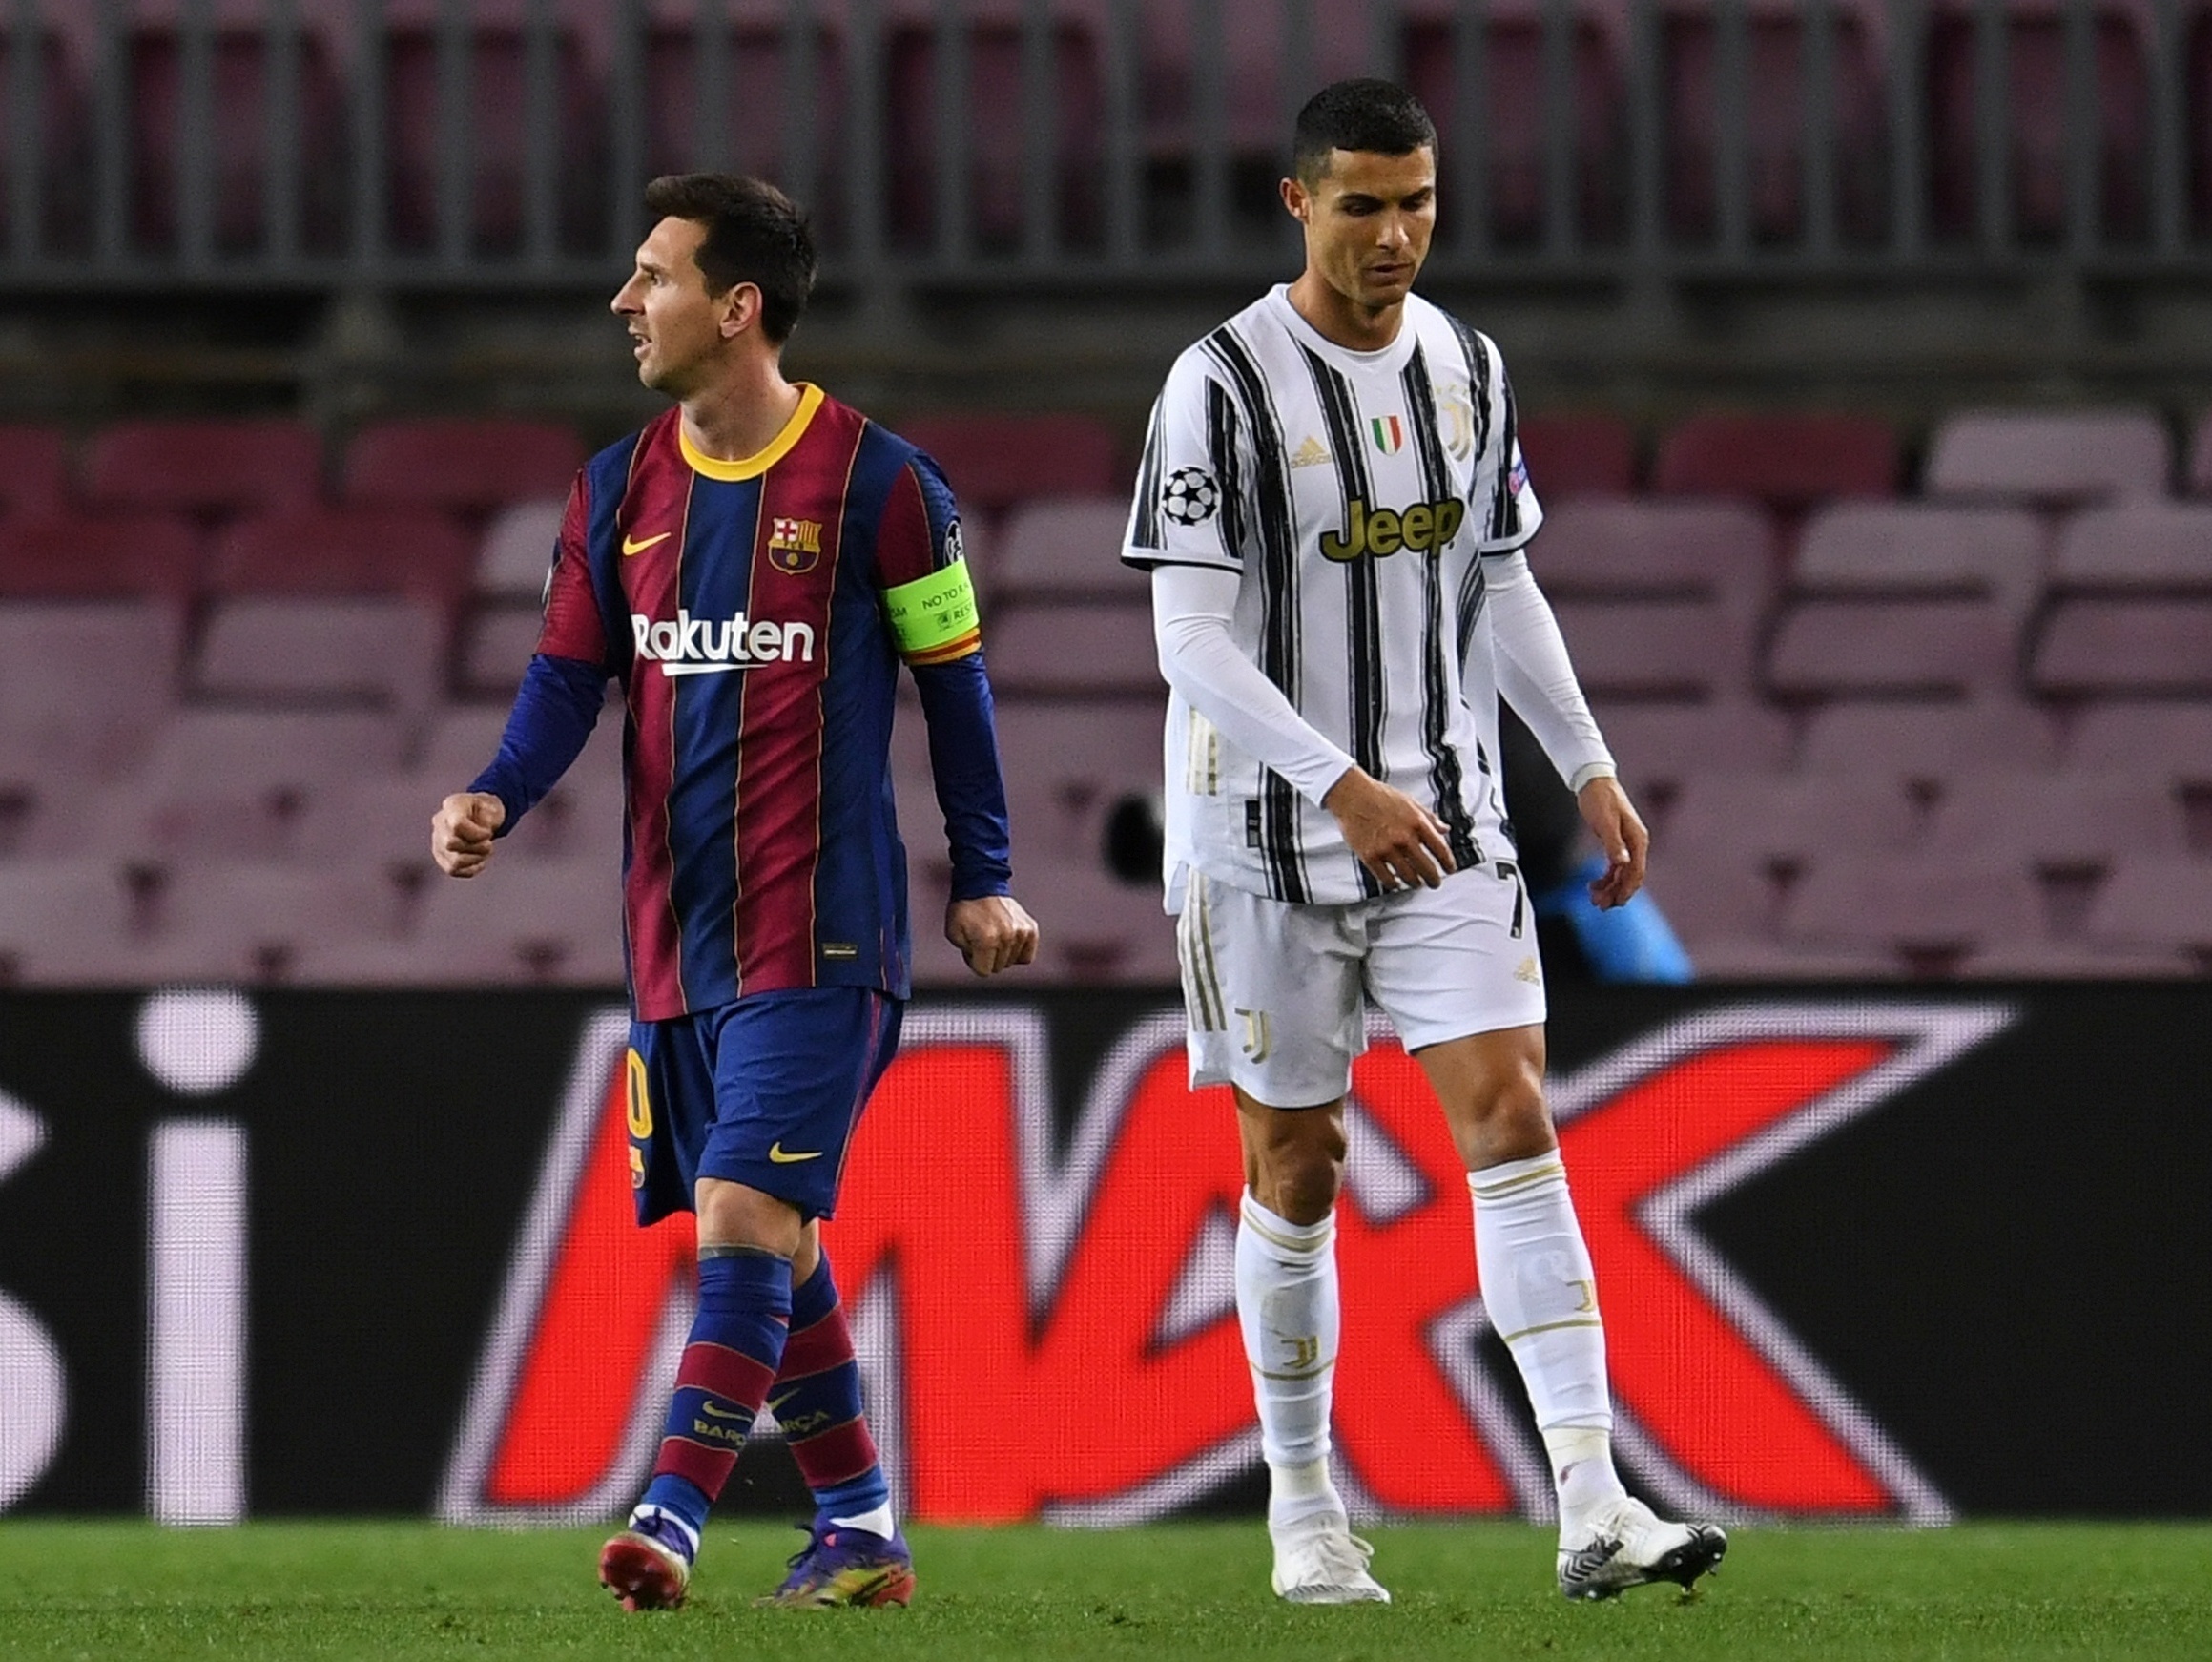 Recordes no futebol: Teste seus conhecimentos sobre Messi, Neymar e CR7